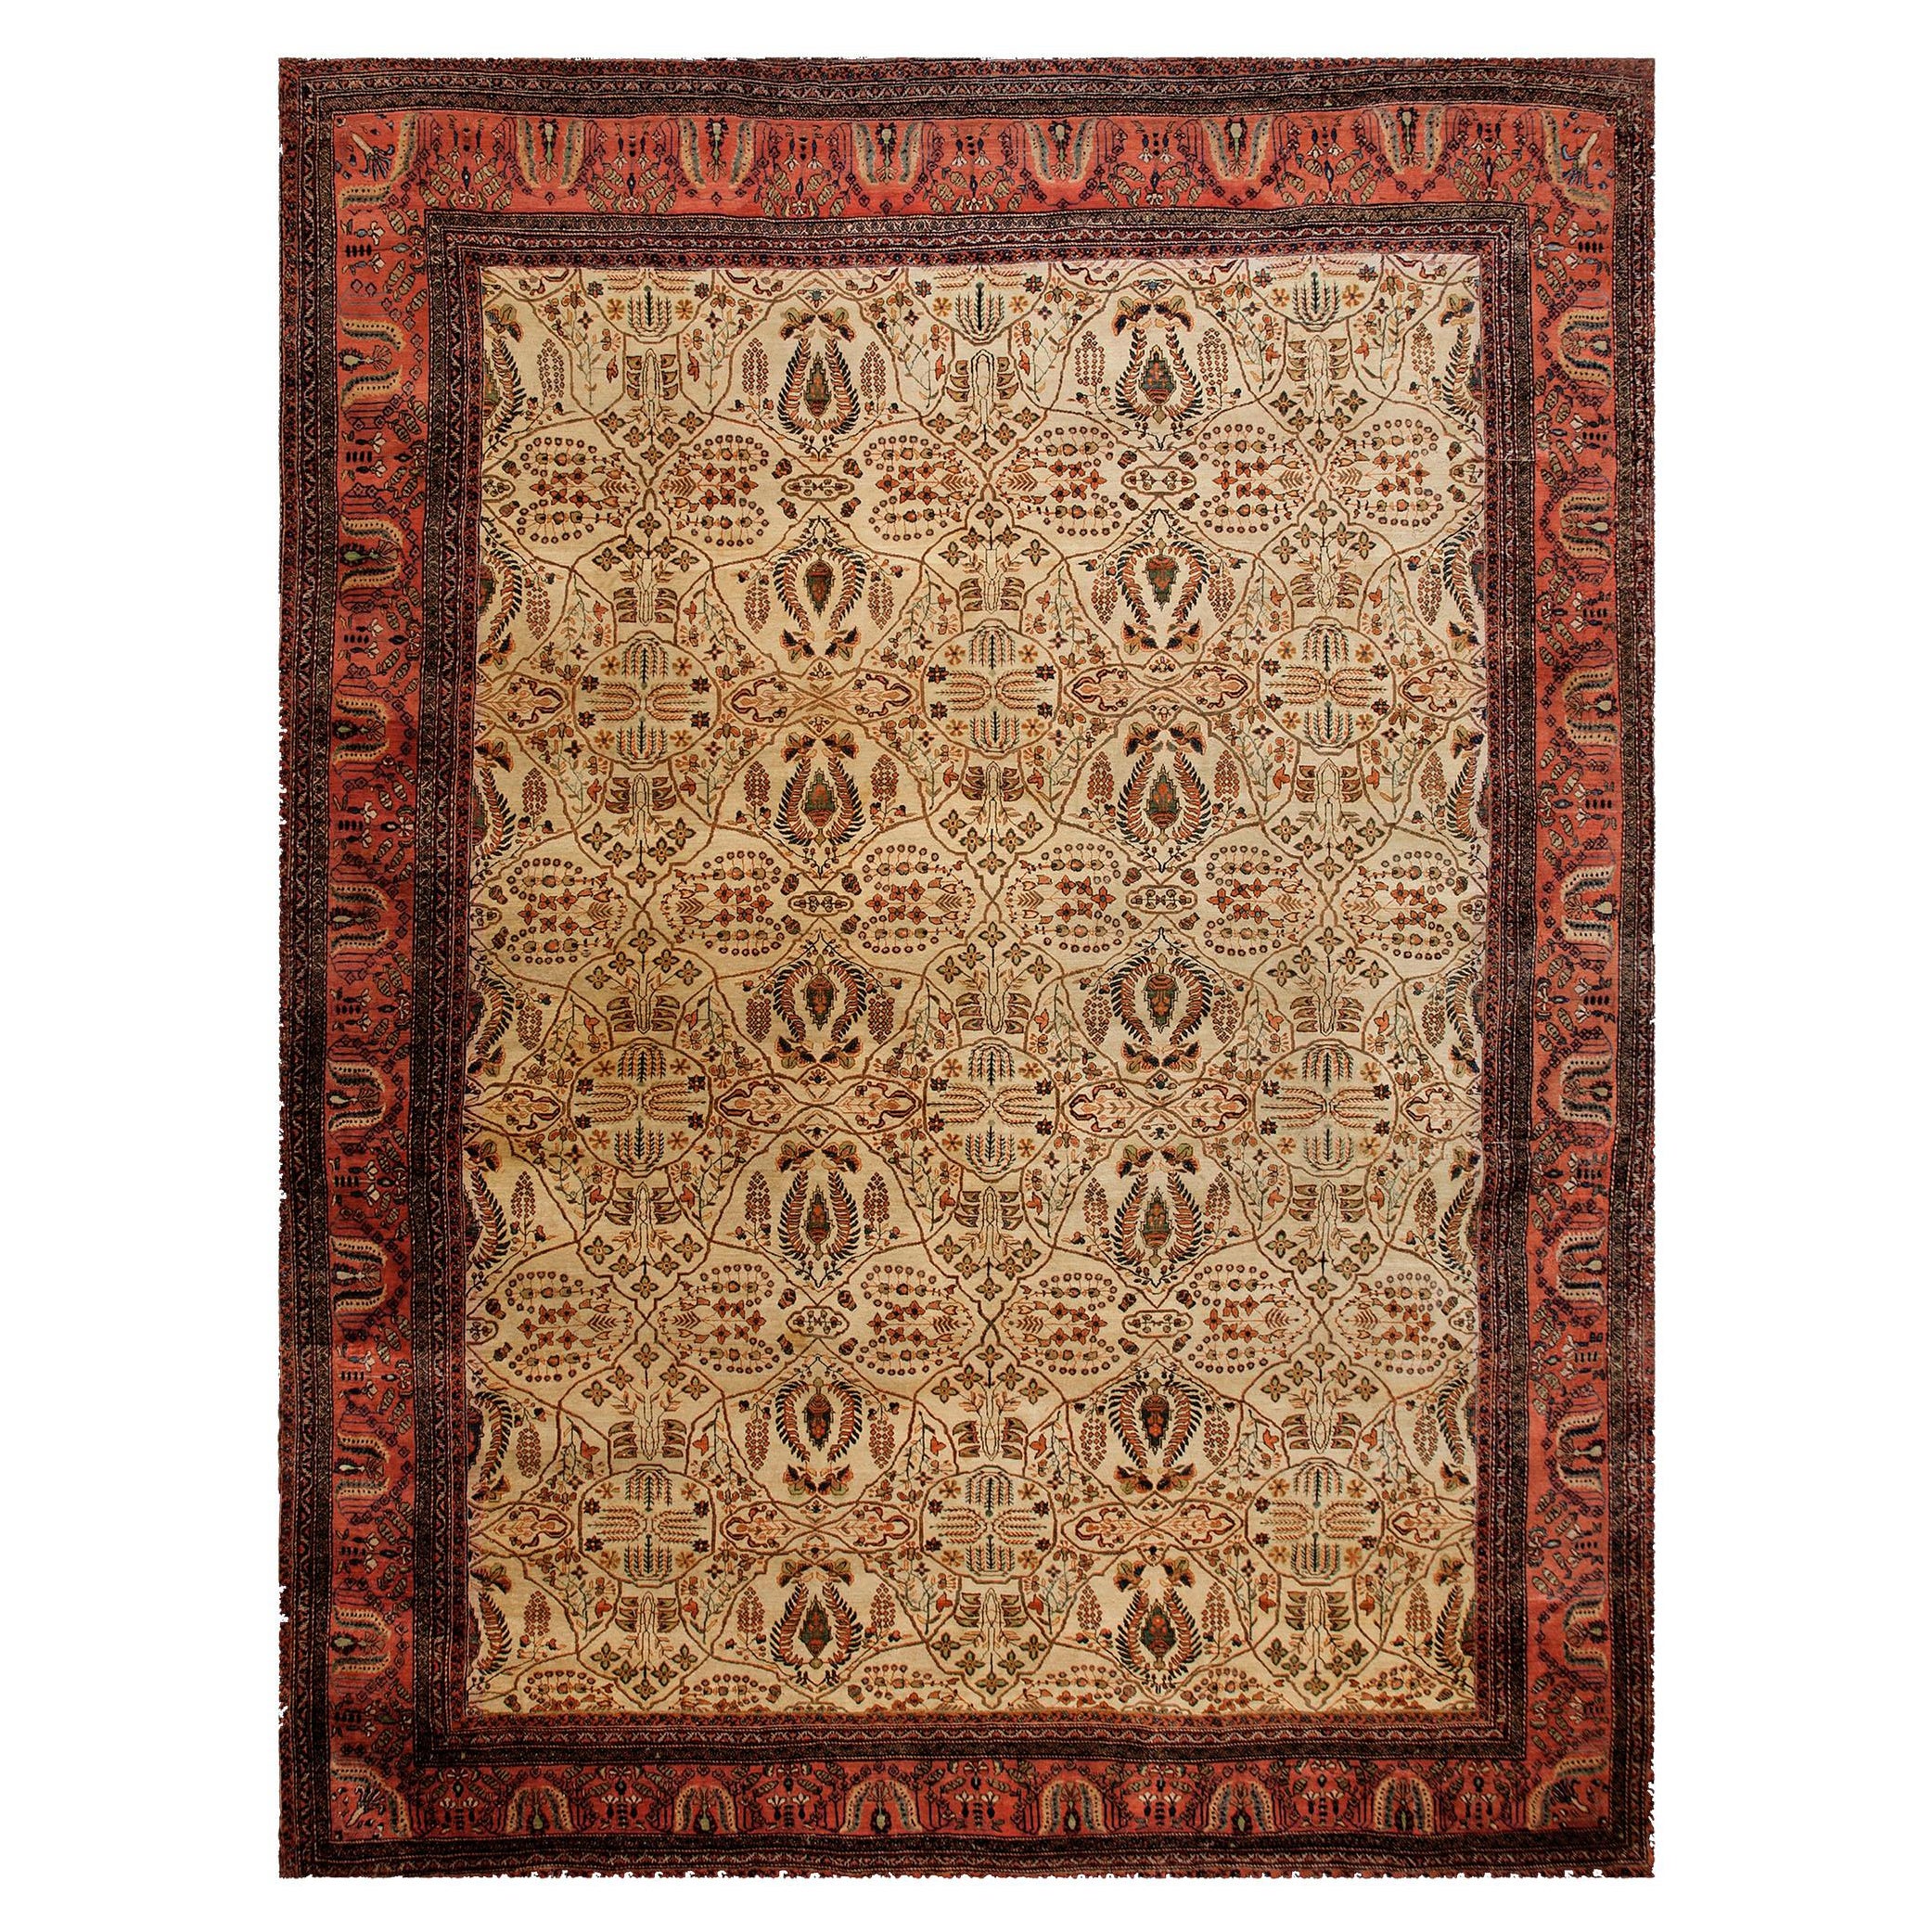 19th Century Persian Sarouk Farahan Carpet ( 11'10" x 15'10" - 361 x 483 )